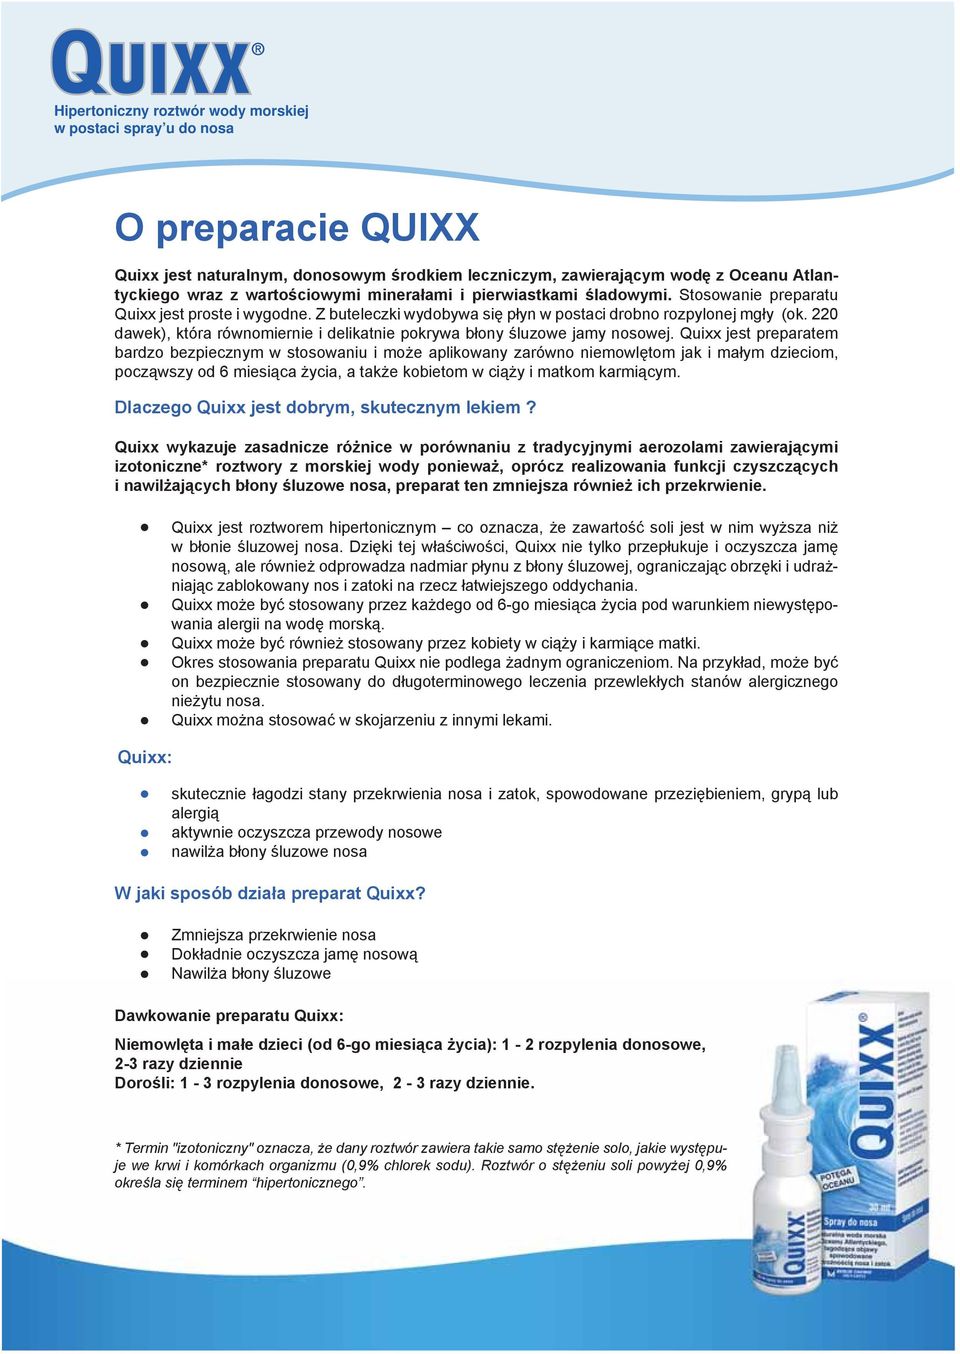 Quixx jest preparatem bardzo bezpiecznym w stosowaniu i może aplikowany zarówno niemowlętom jak i małym dzieciom, począwszy od 6 miesiąca życia, a także kobietom w ciąży i matkom karmiącym.